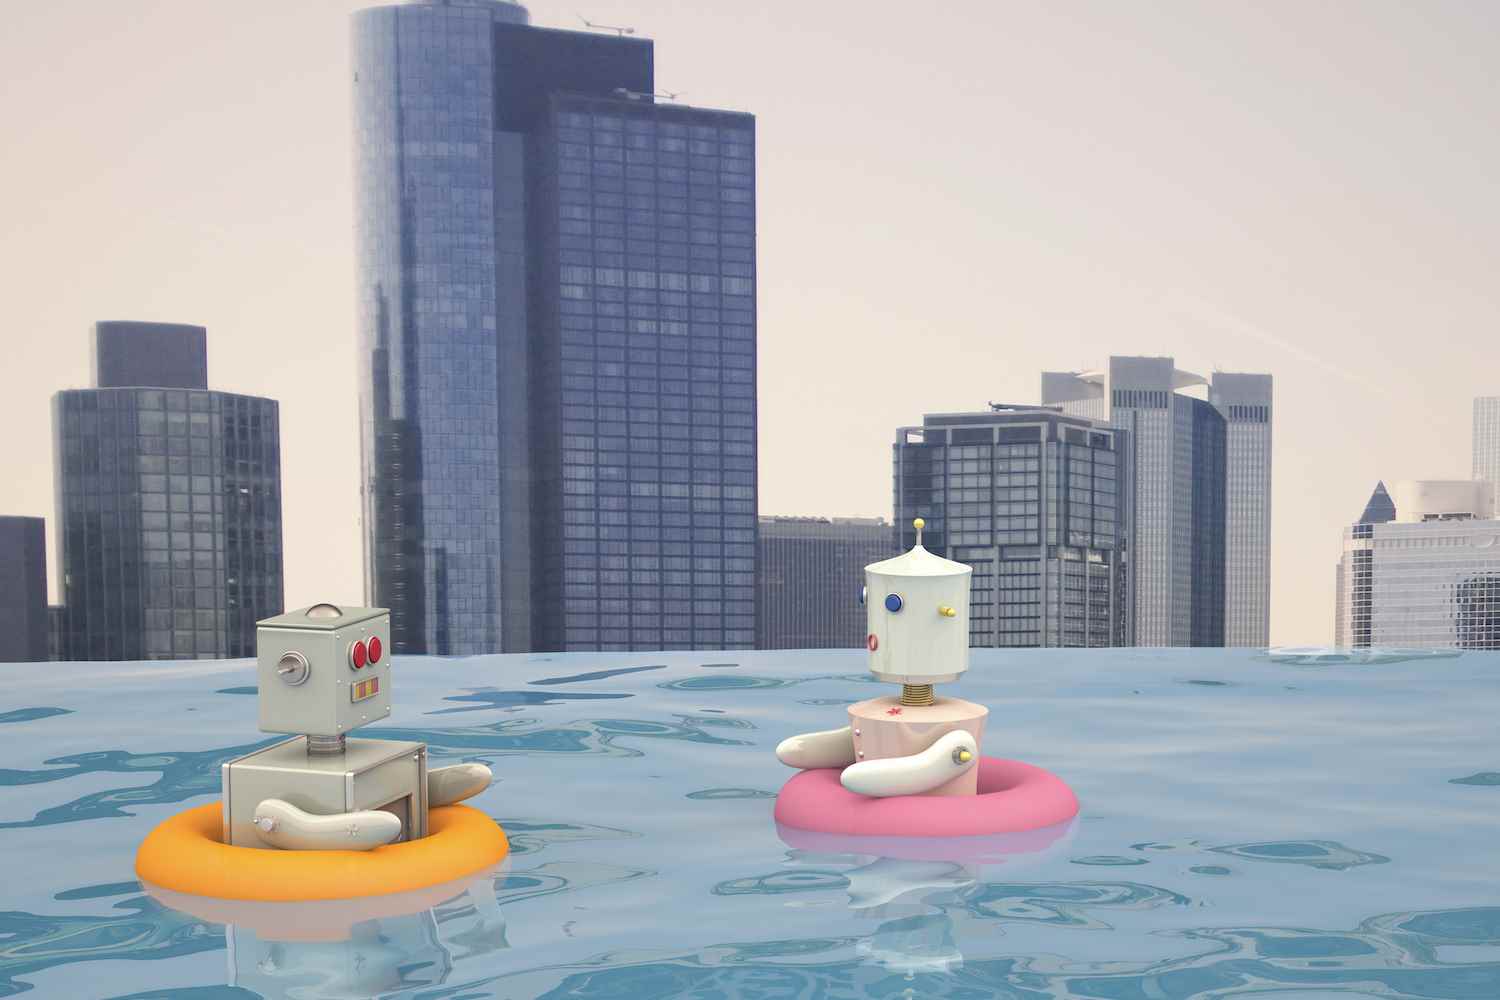 Şehir silüetinin önünde havuzda yüzen yüzen lastikli erkek ve dişi robot, 3 boyutlu görüntüleme